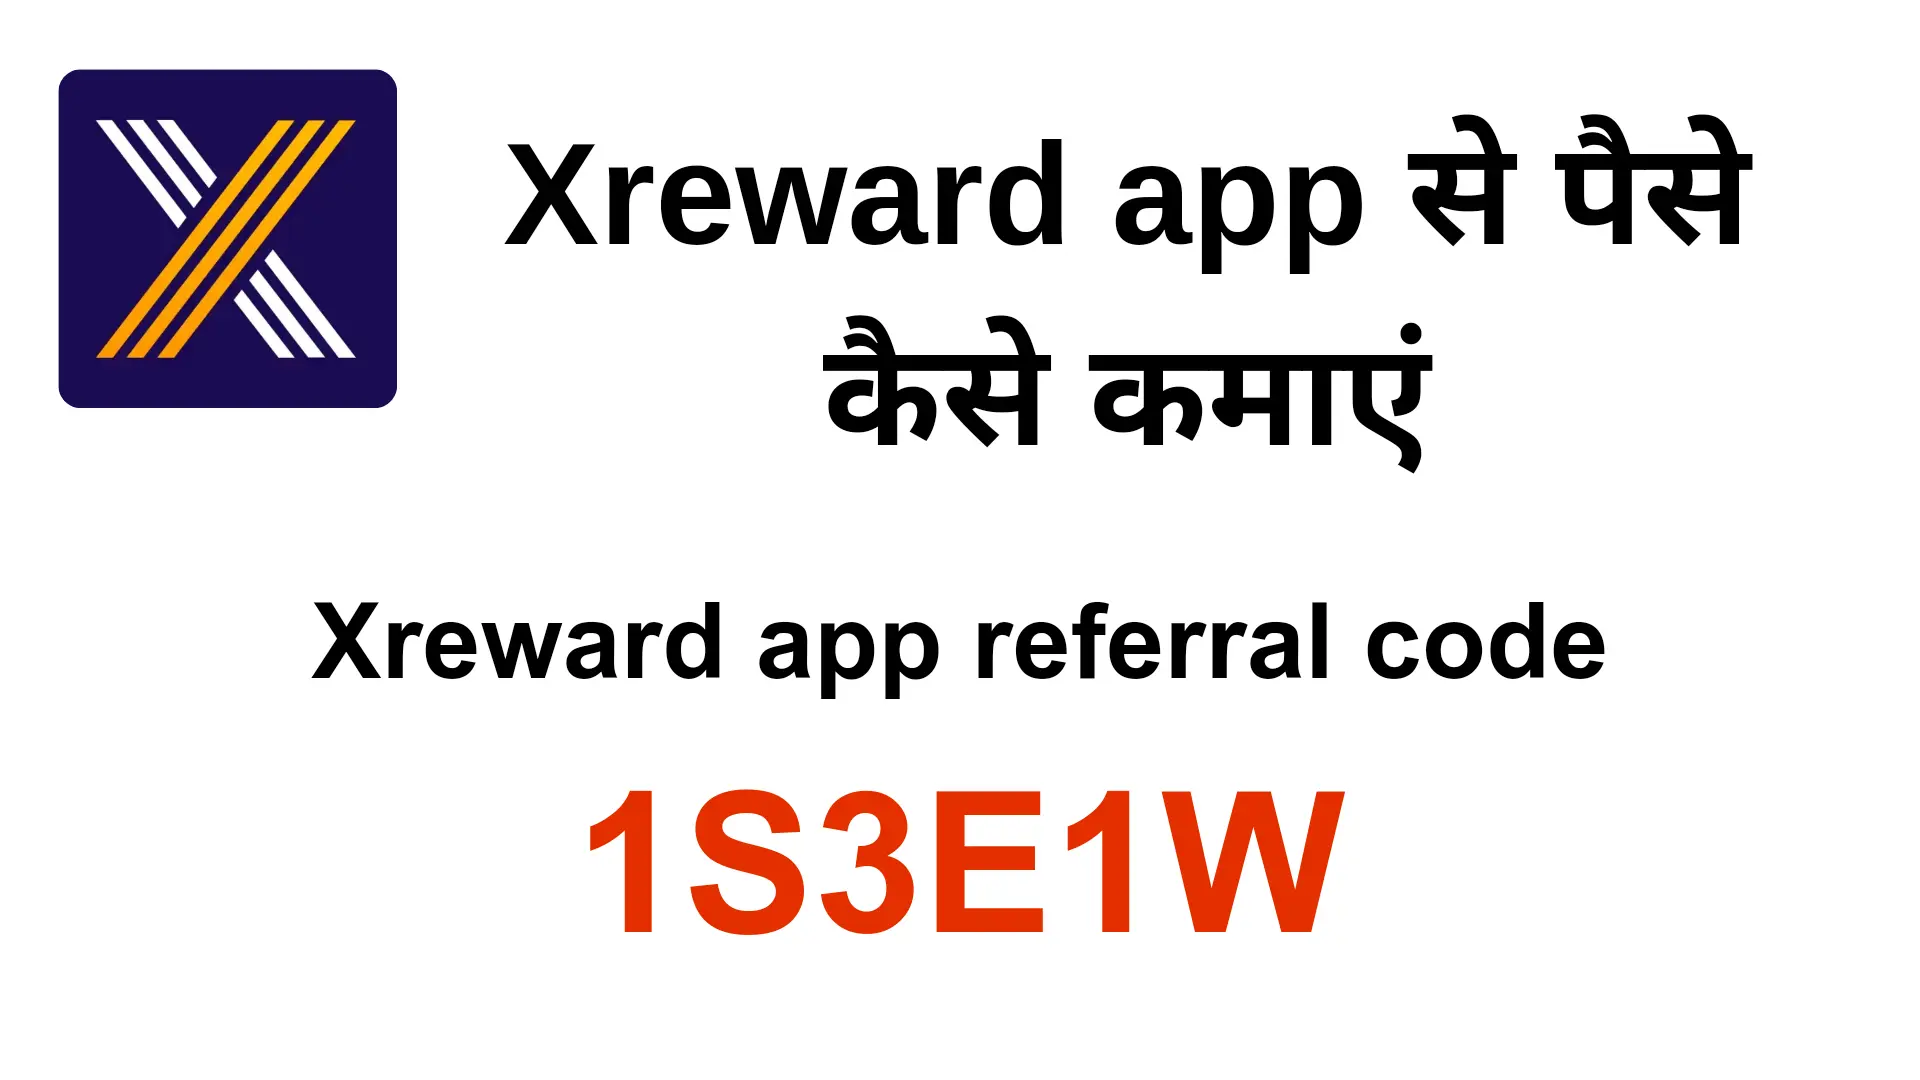 X reward app referral code| xreward